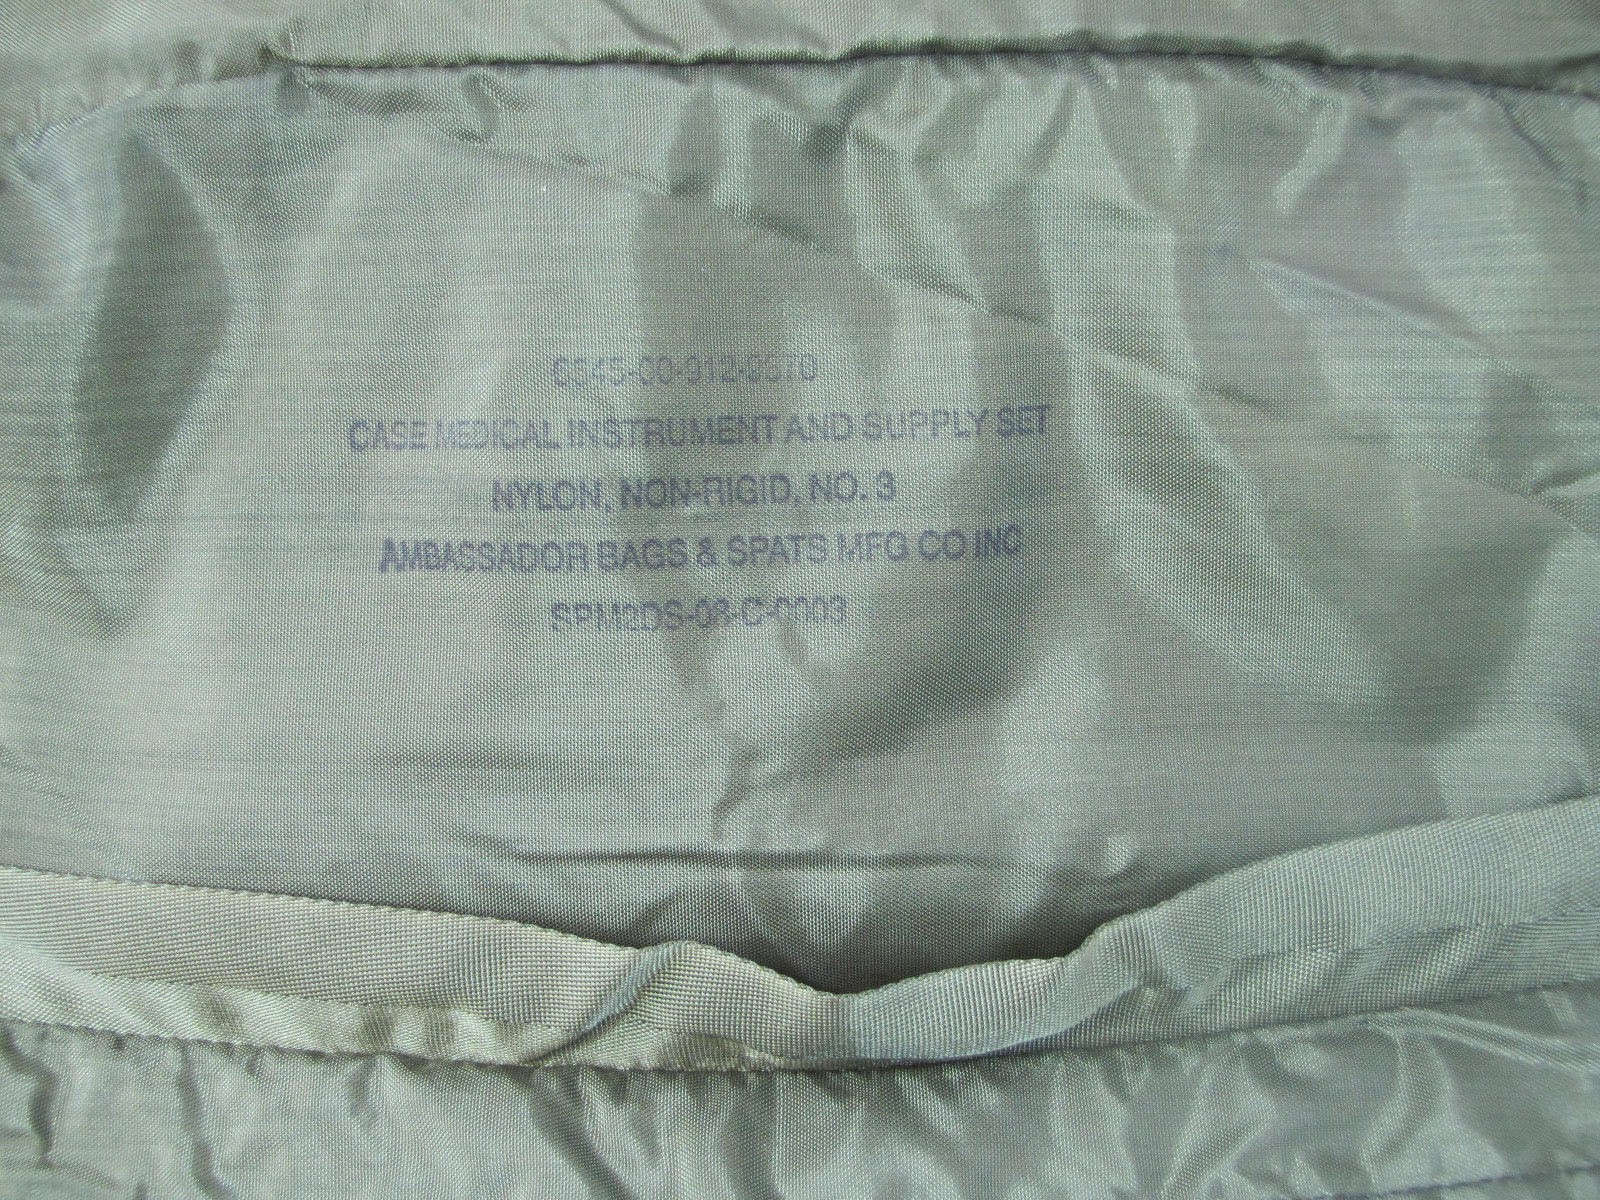 Webbingbabel: MES Combat Lifesaver Bag 1999